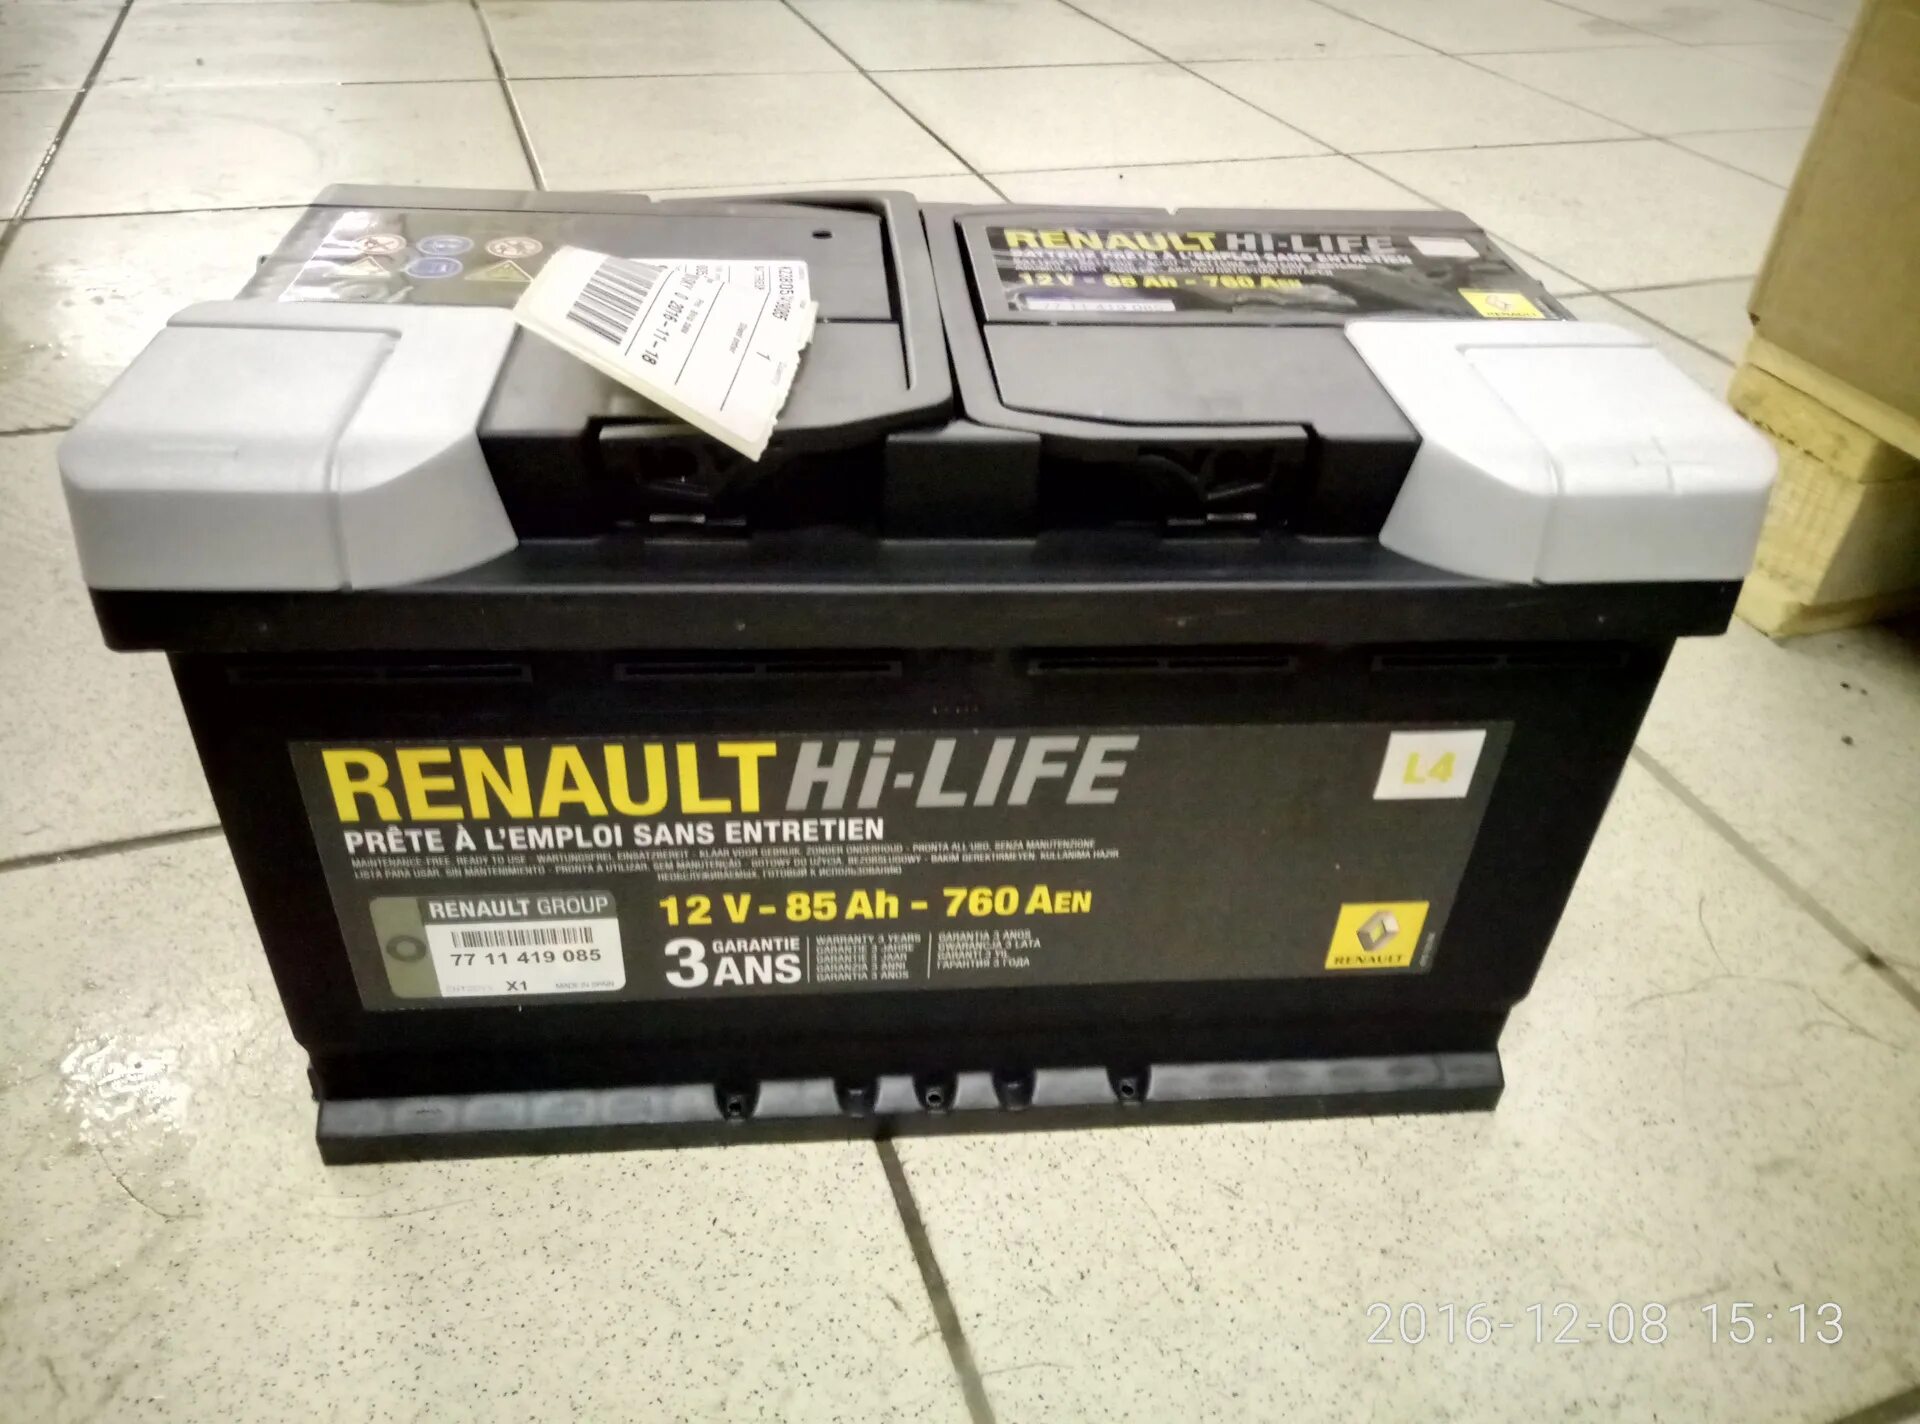 Аккумулятор Renault Hi-Life 12v 70ah. АКБ Renault 70ah 720a. АКБ Renault Hi-Life 70ah. Аккумулятор Hi Life 70ah 720a.